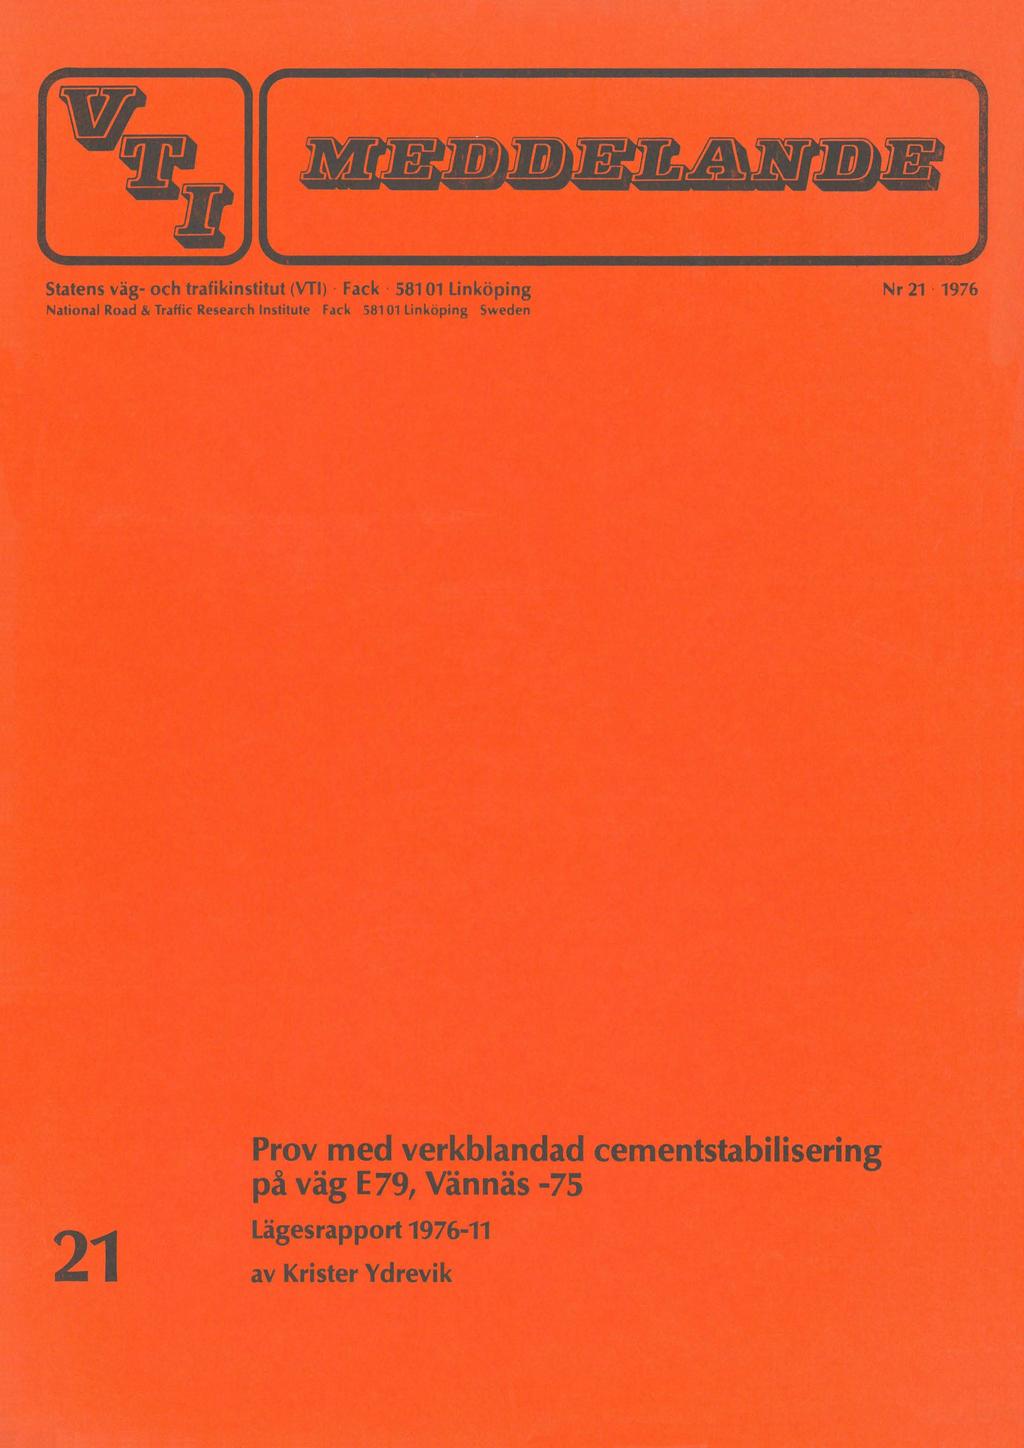 Nr 21 1976 21 Prov med verkblandad cementstabilisering på